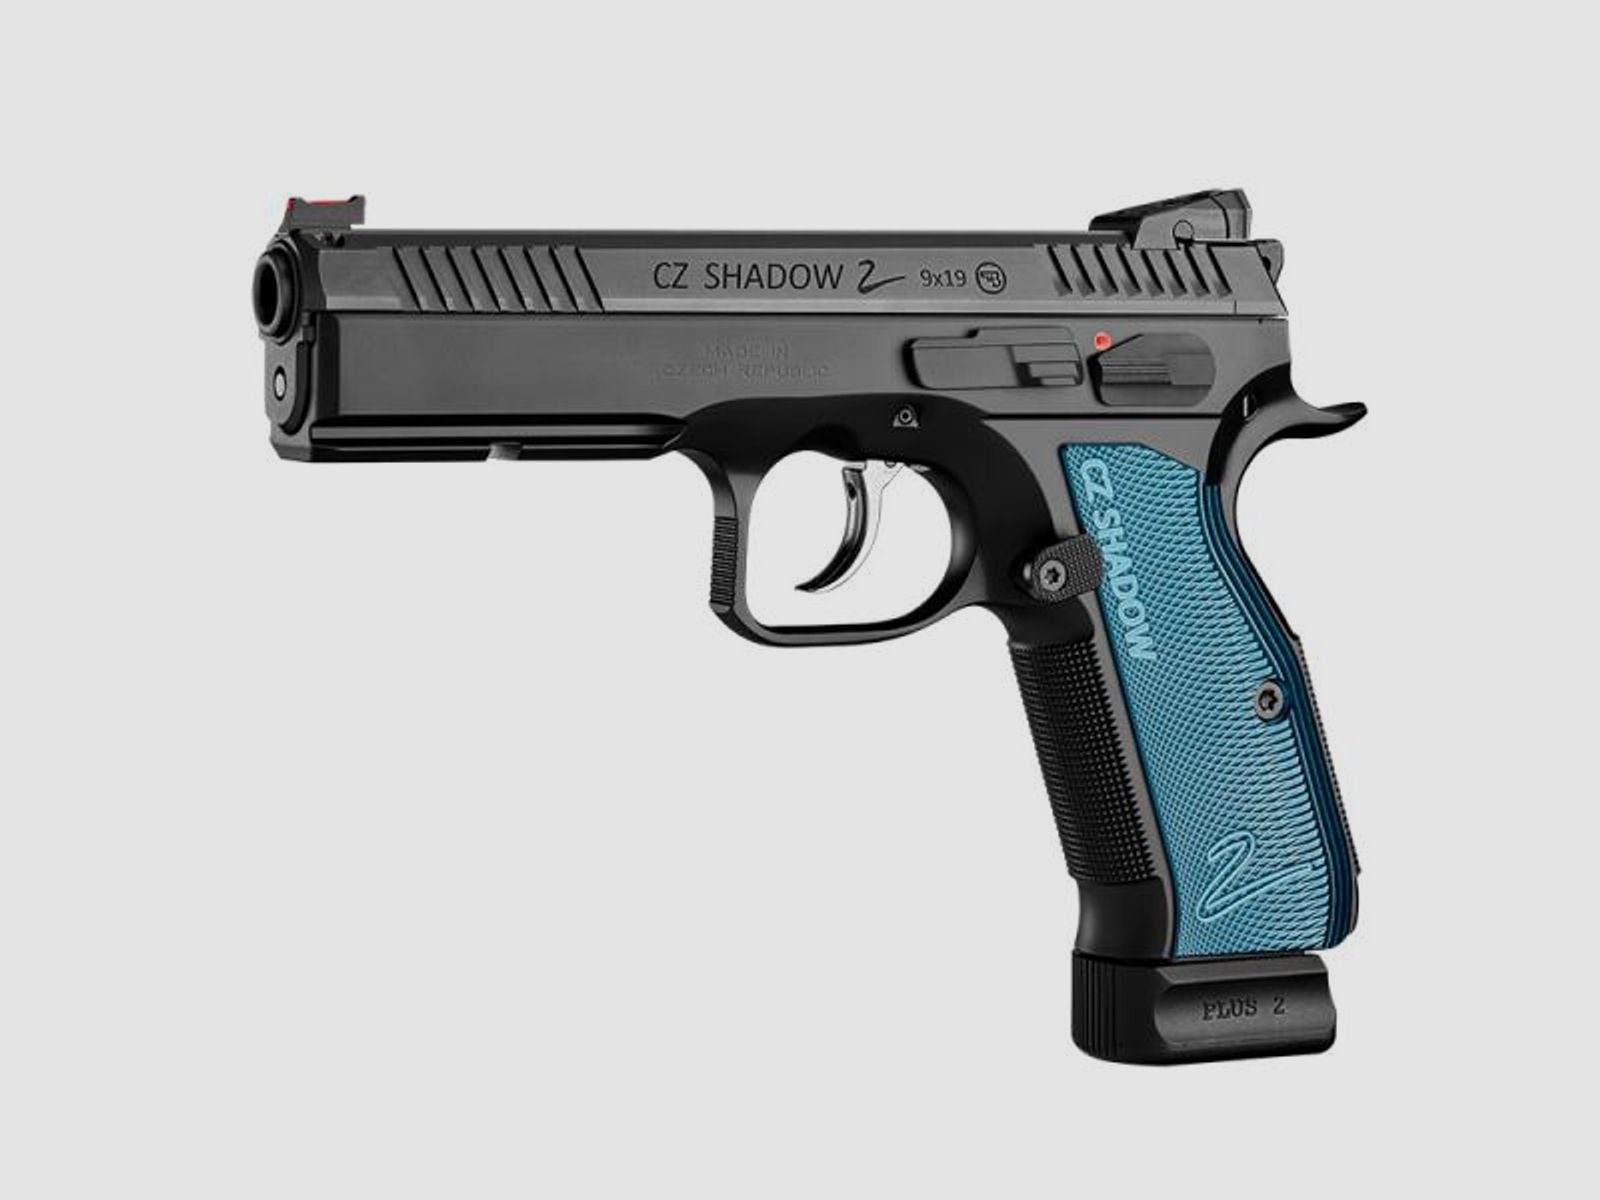 CZ BRNO Pistole Mod. CZ SHADOW 2 9mmLuger  'BLACK POLY' blau